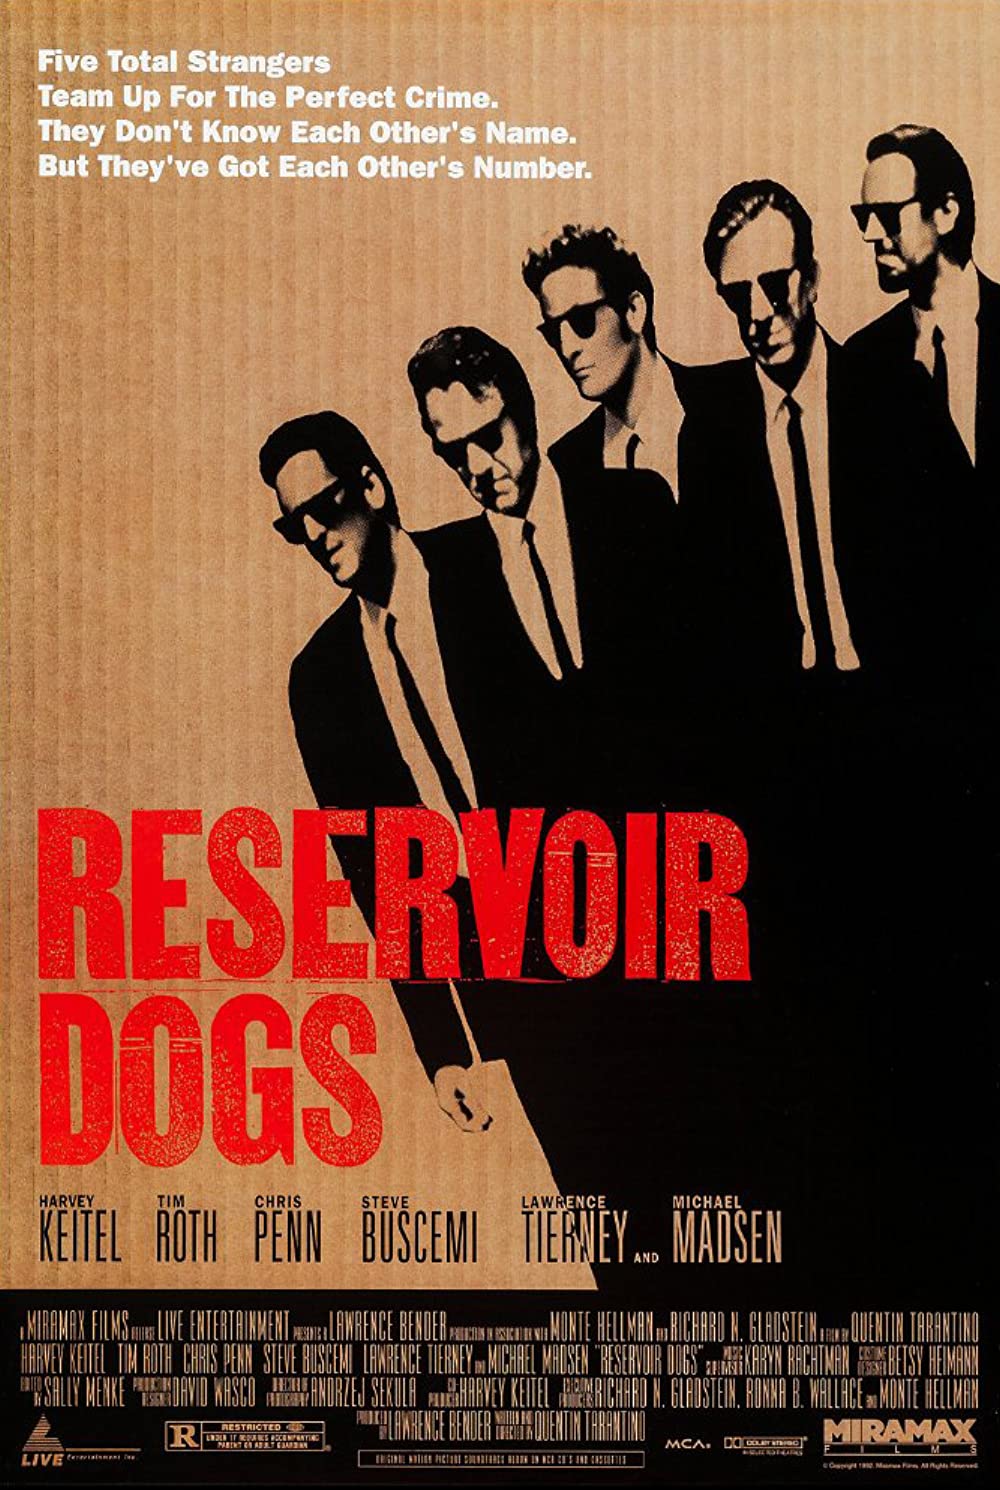 Filmbeschreibung zu Reservoir Dogs - Wilde Hunde